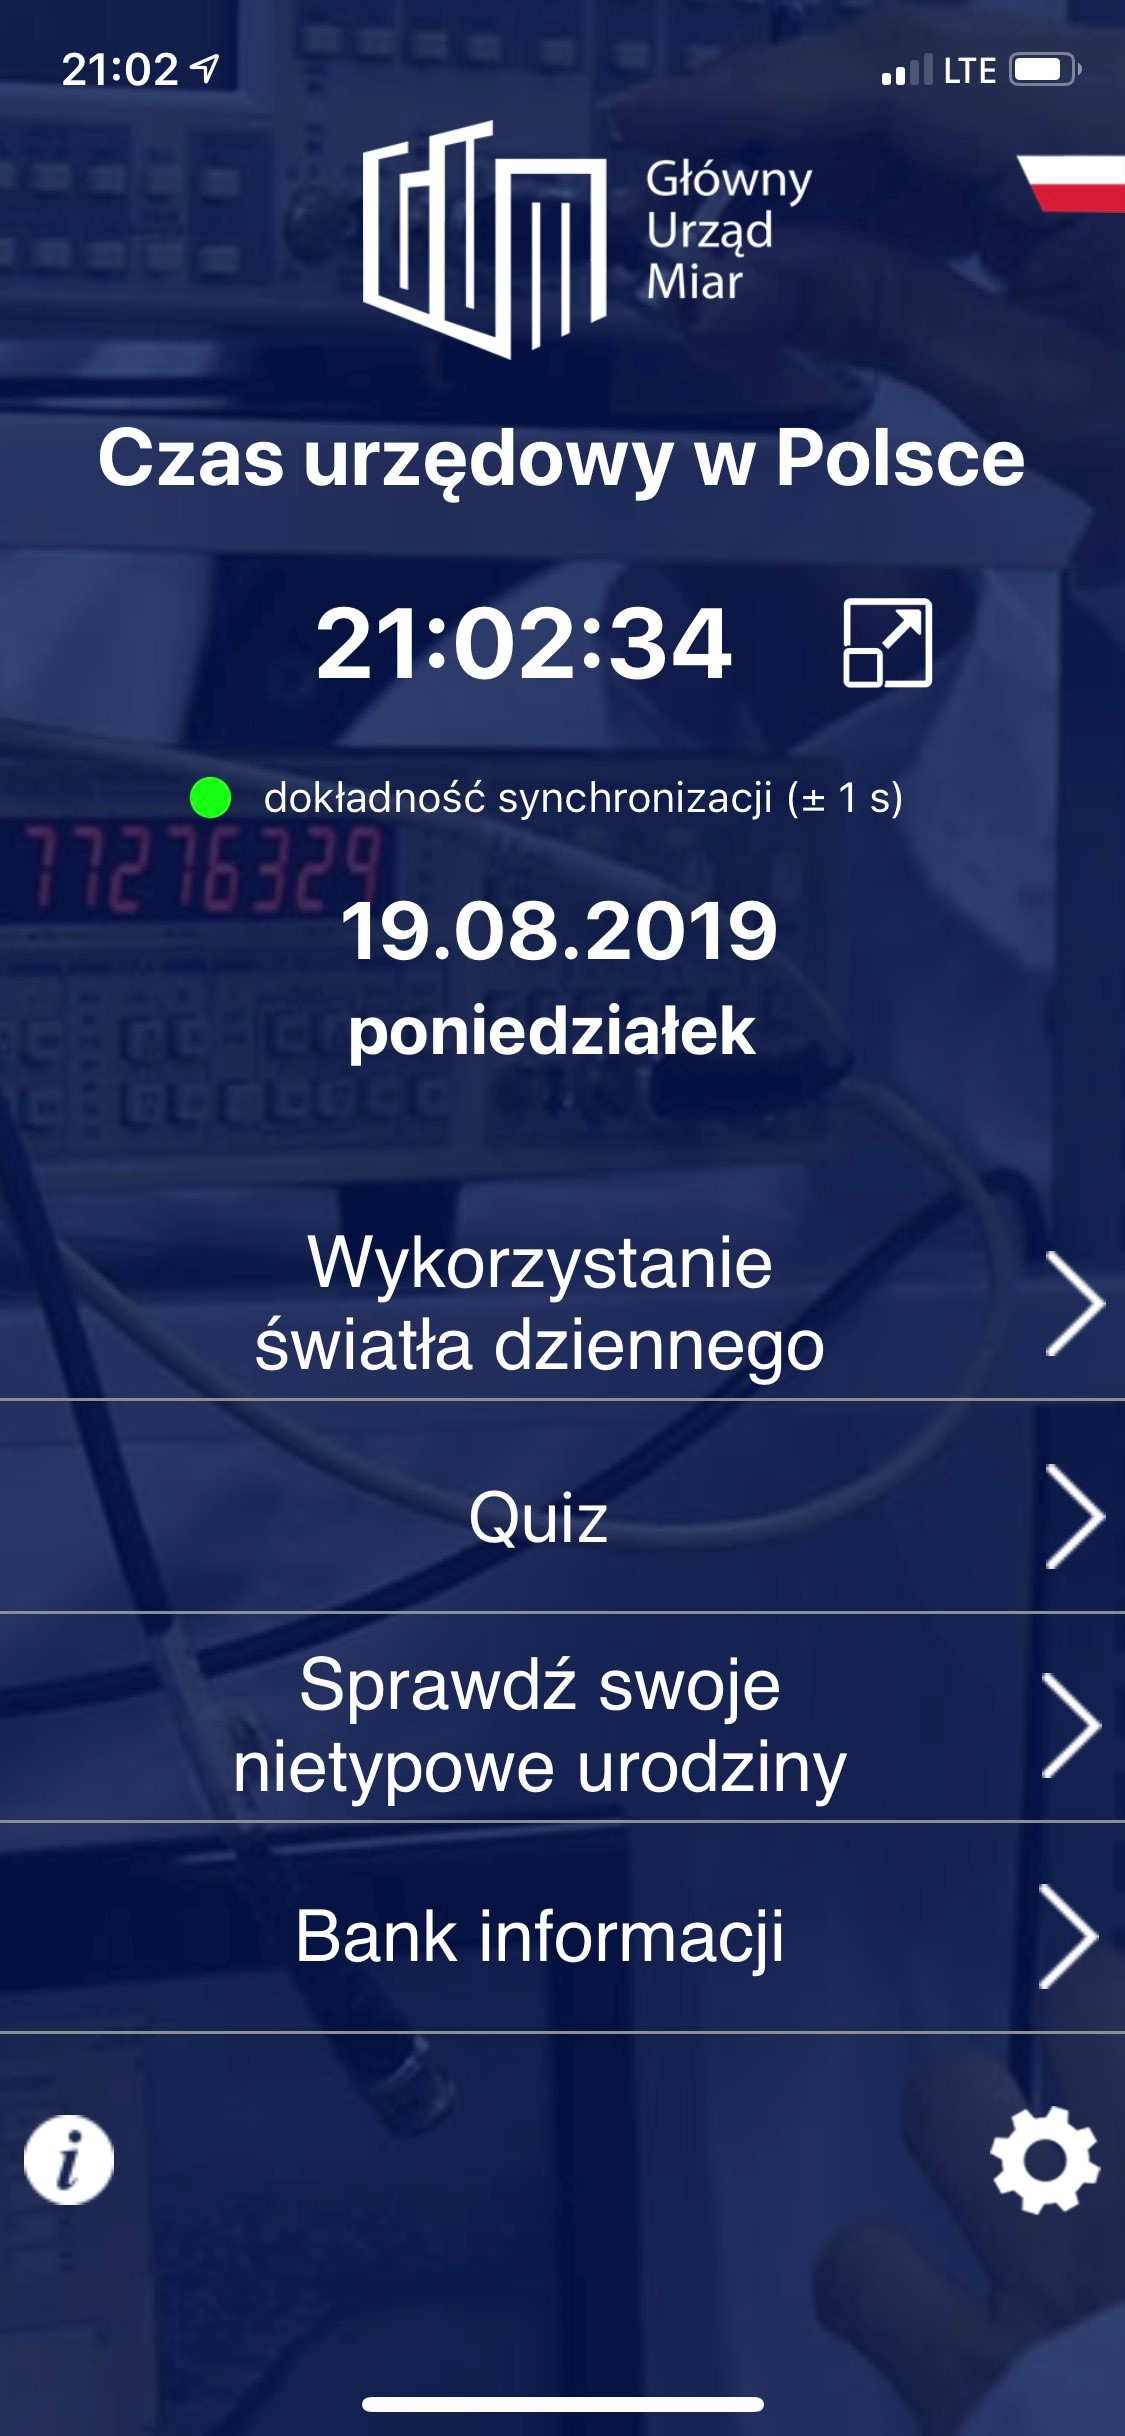 Wygląd aplikacji Czas na urządzenia z systemem iOS - układ pionowy. Na granatowym tle u góry dokładny czas urzędowy w Polsce, poniżej kilka modułów informacyjnych do rozwinięcia.